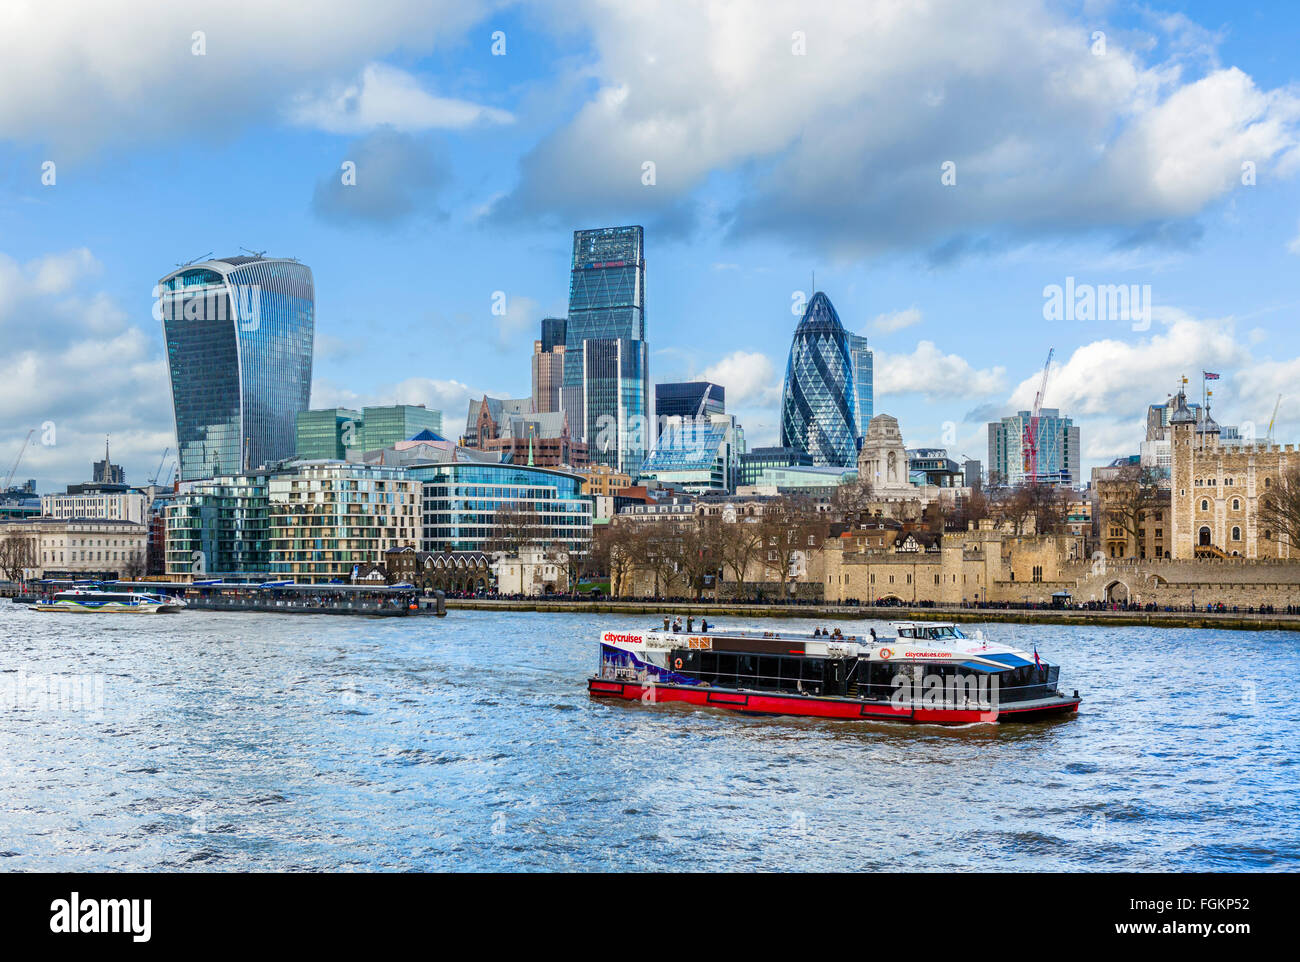 Fluss Themse & City of London mit Tower of London rechts, Gurke im Zentrum und "Walkie Talkie" auf Links, London, England, UK Stockfoto